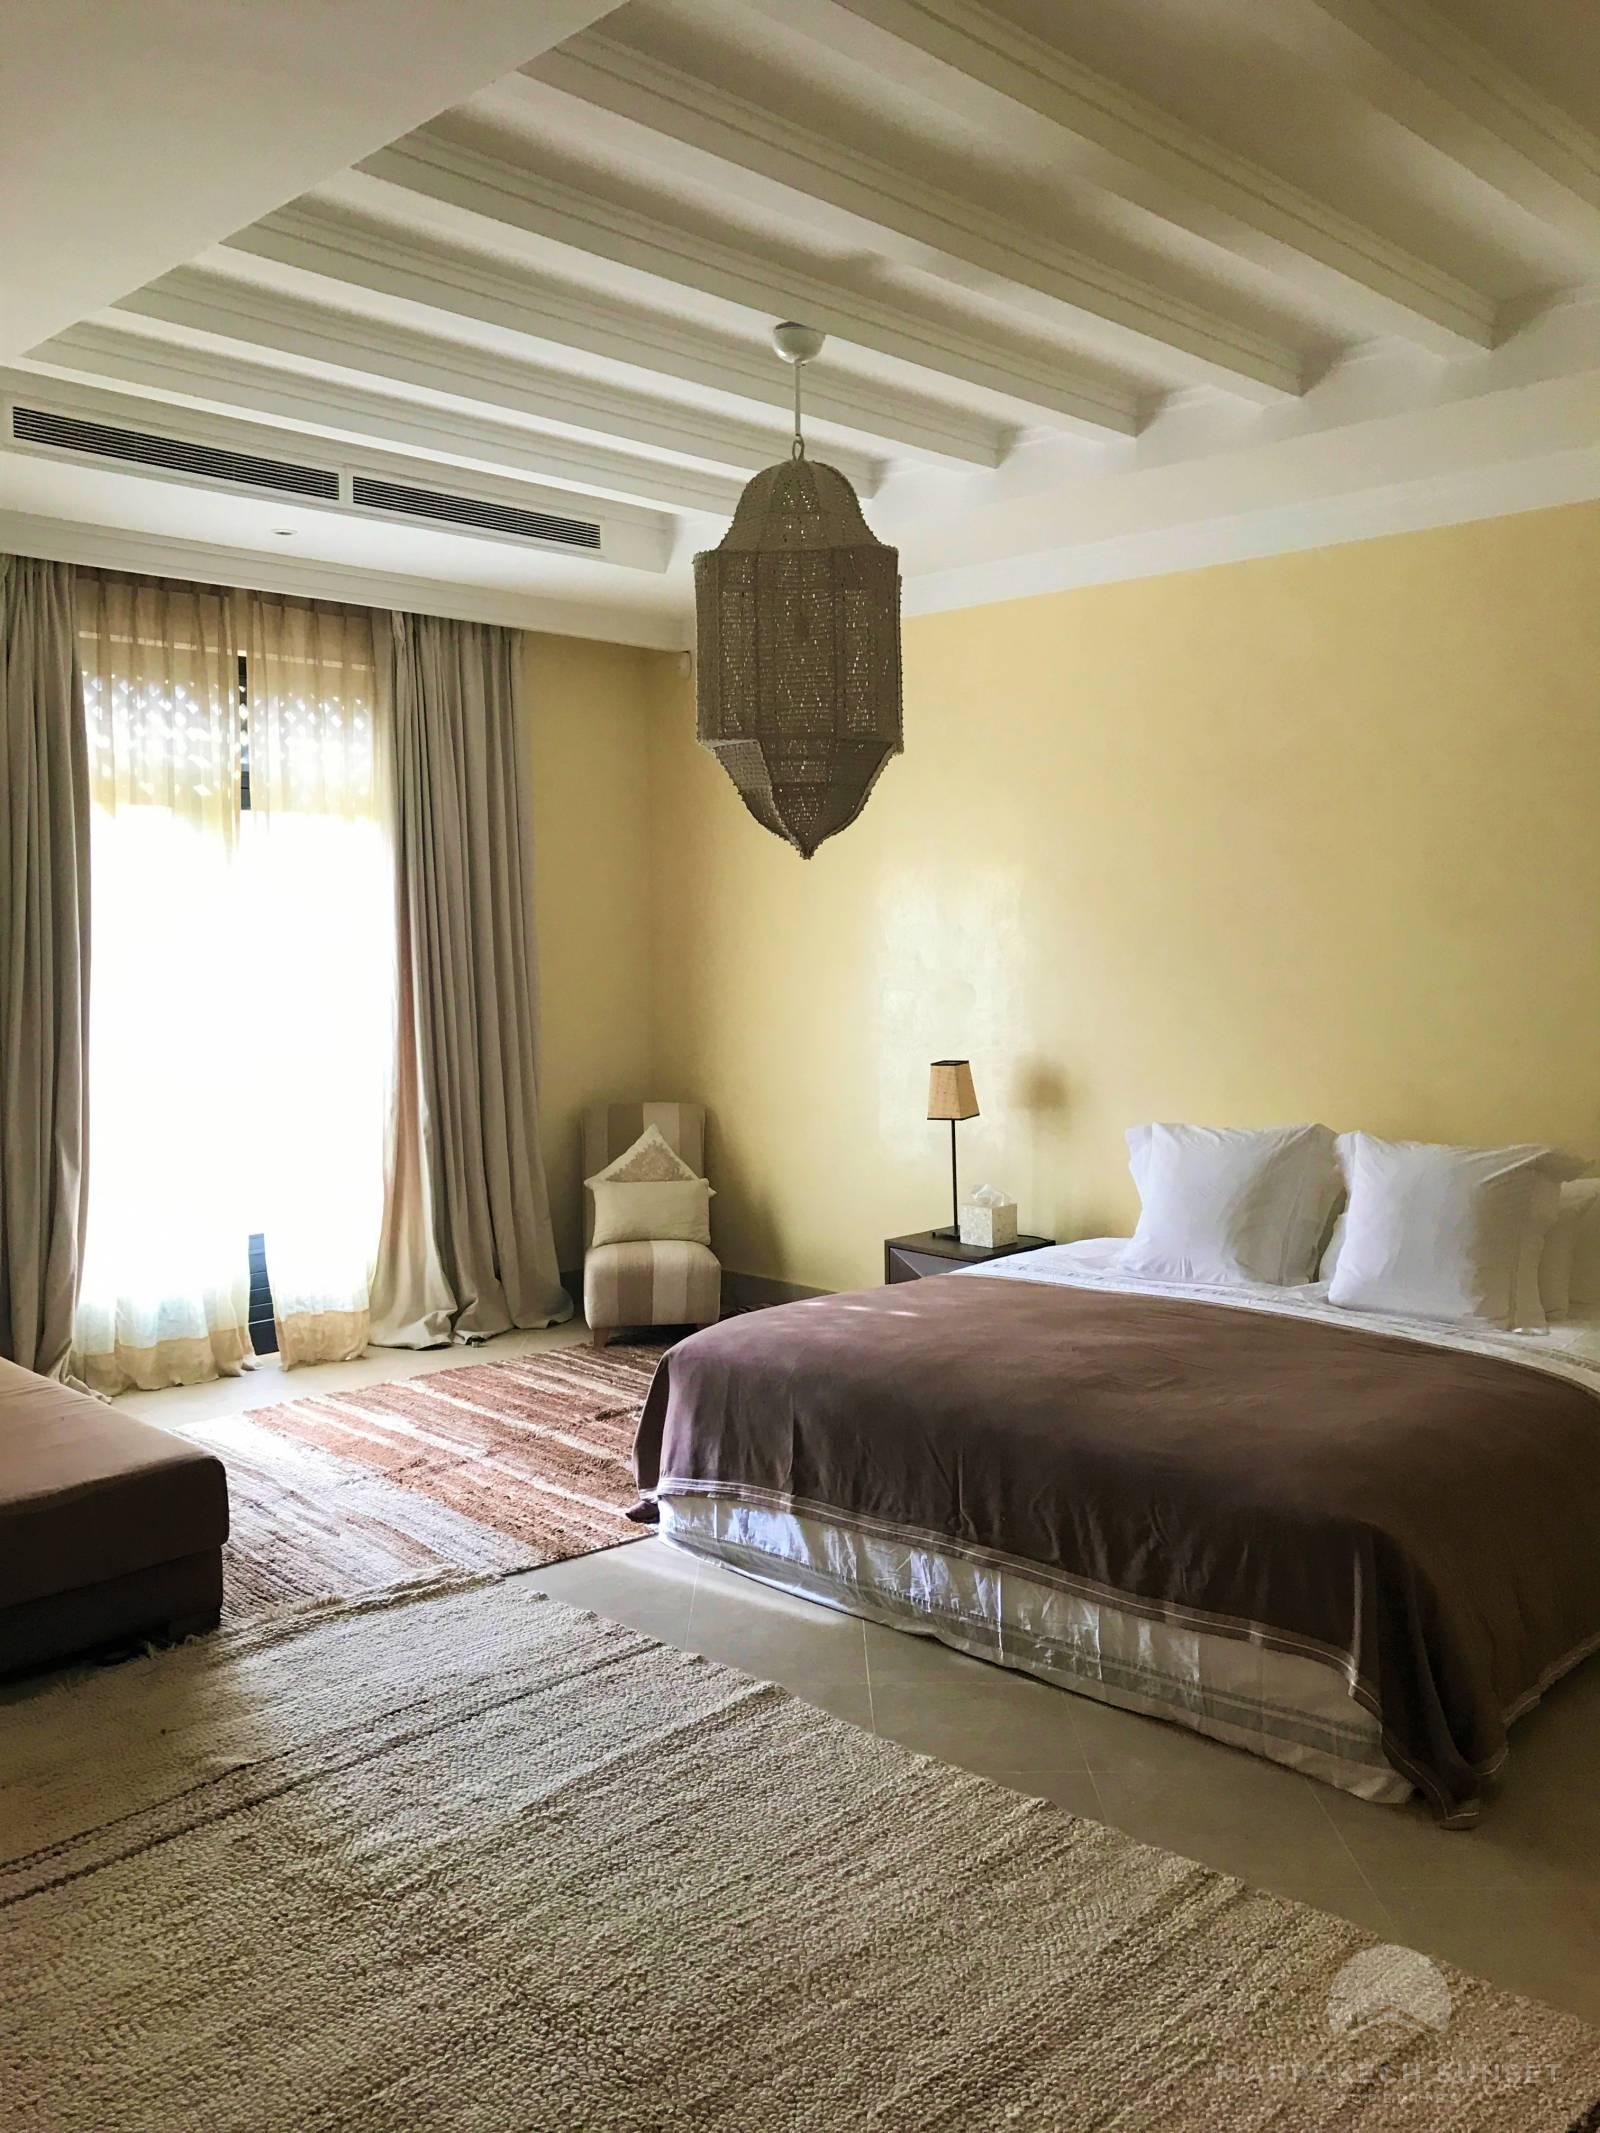 Une villa de luxe exceptionnelle à louer à Marrakech proche de M avenue